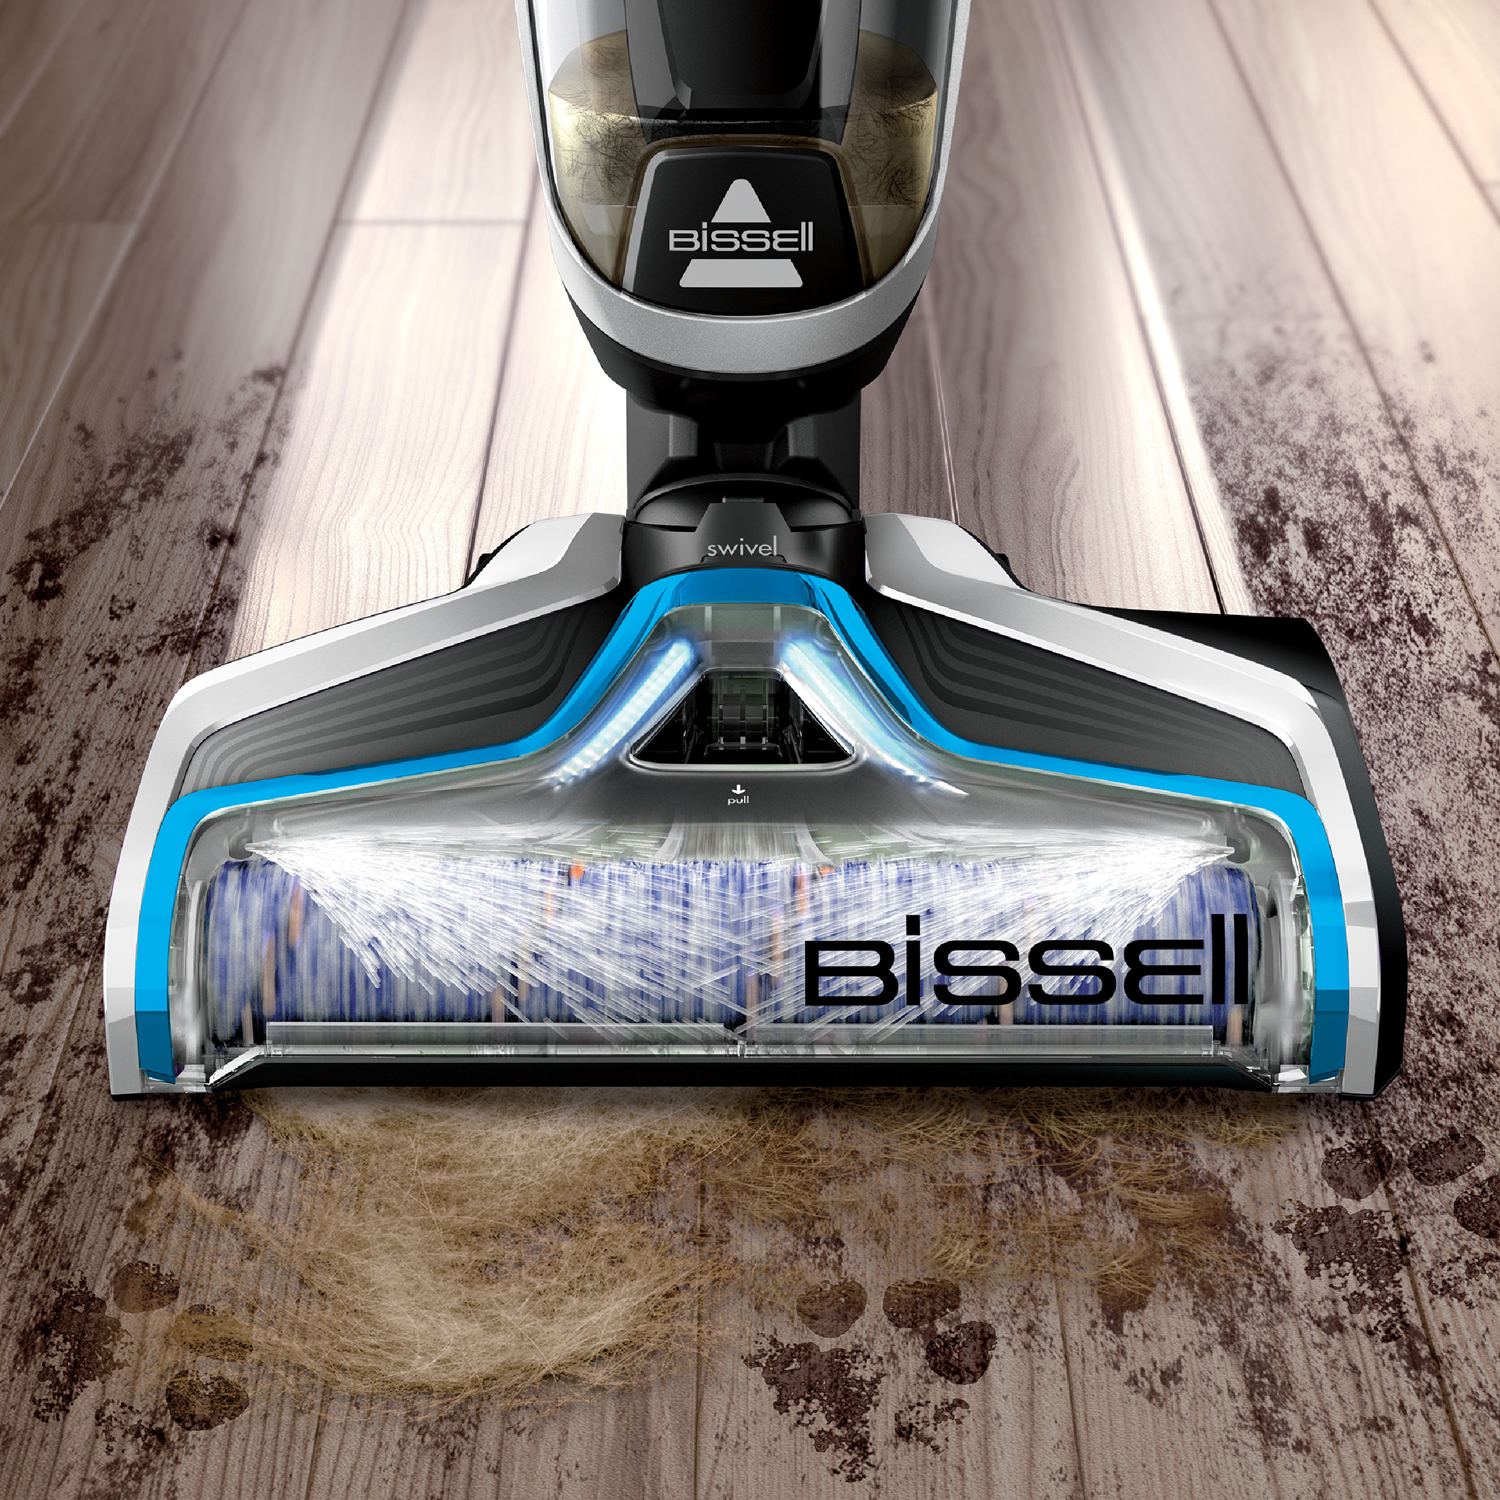 BISSELL® CrossWave® Cordless เครื่องทำความสะอาดพื้นแบบไร้สาย 3IN1 แถมน้ำยาทำความสะอาดสูตรทั่วไป 6 ขวด